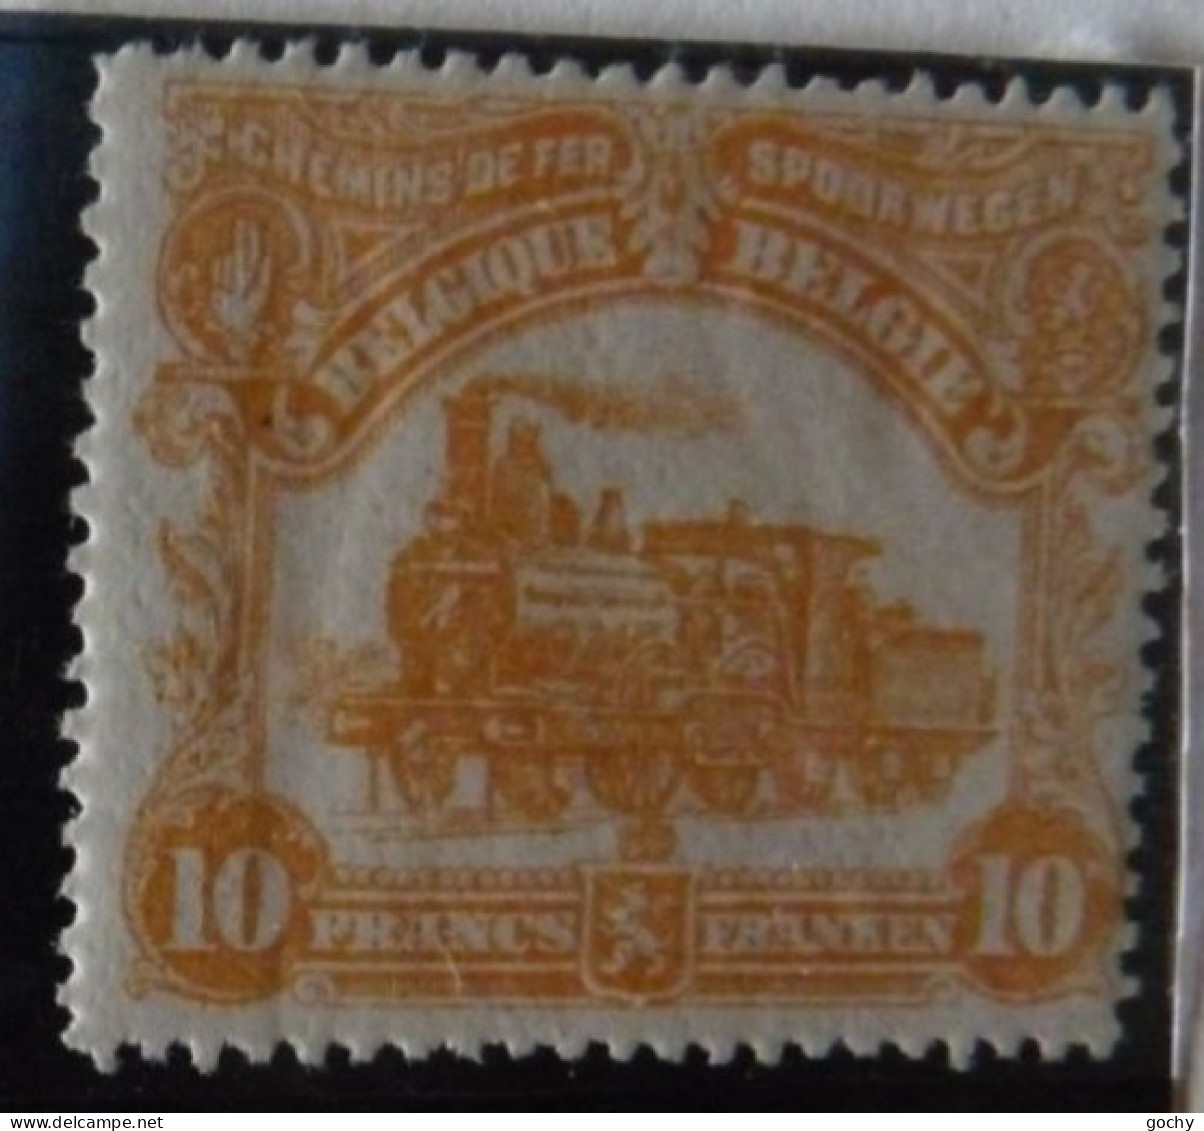 BELGIUM :   1915  - CHEMINS DE FER - CF  78 * - COTE: 220,00€ - Mint